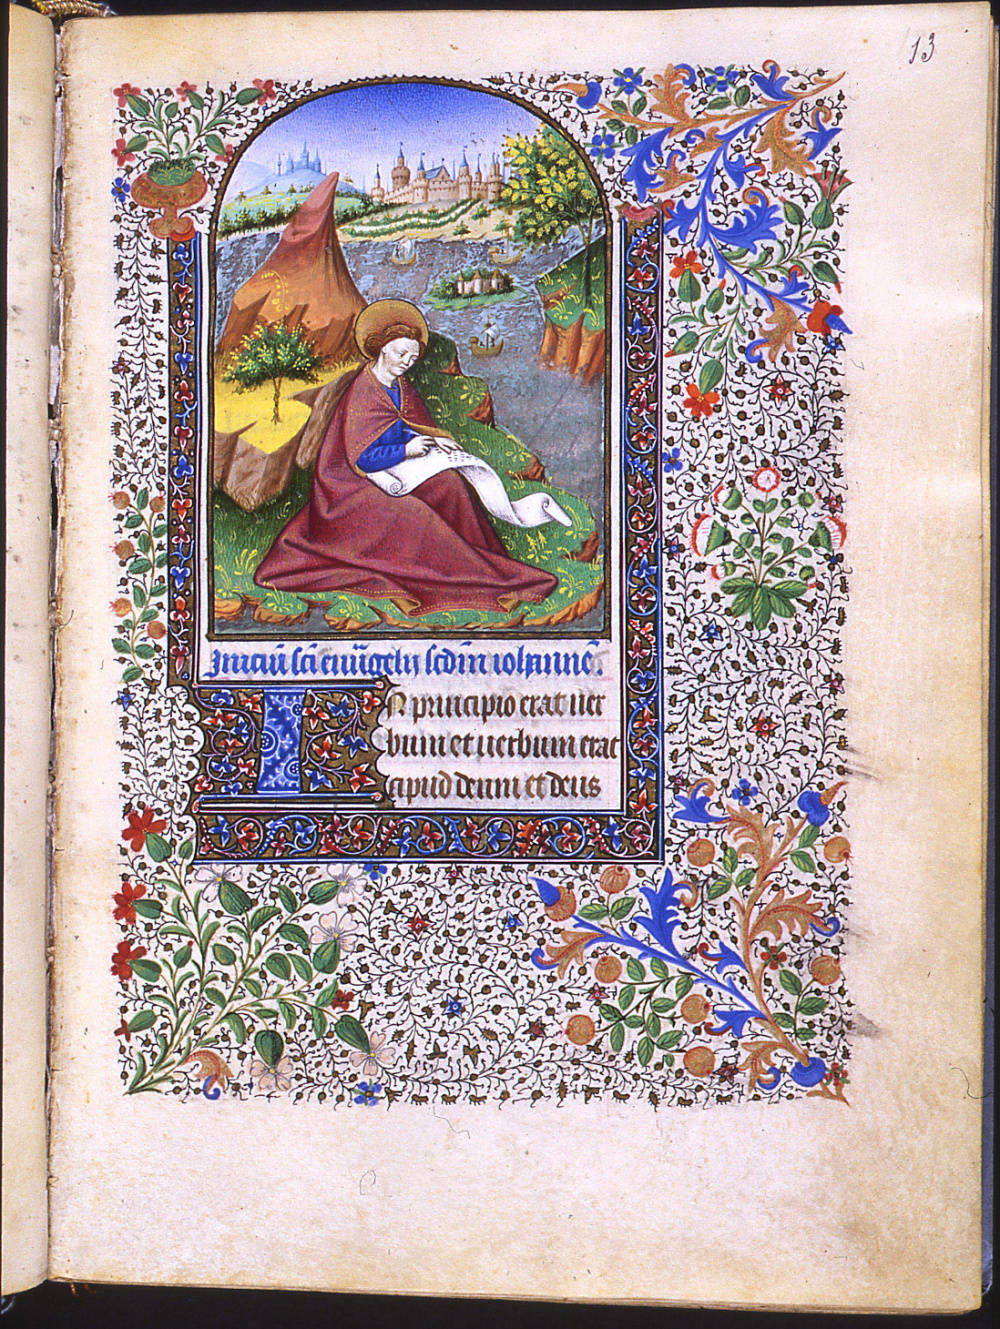 Heures latines à l'usage de Paris (15e siècle) : Saint Jean sur l'île de Patmos. © Bibliothèque municipale de Grenoble.